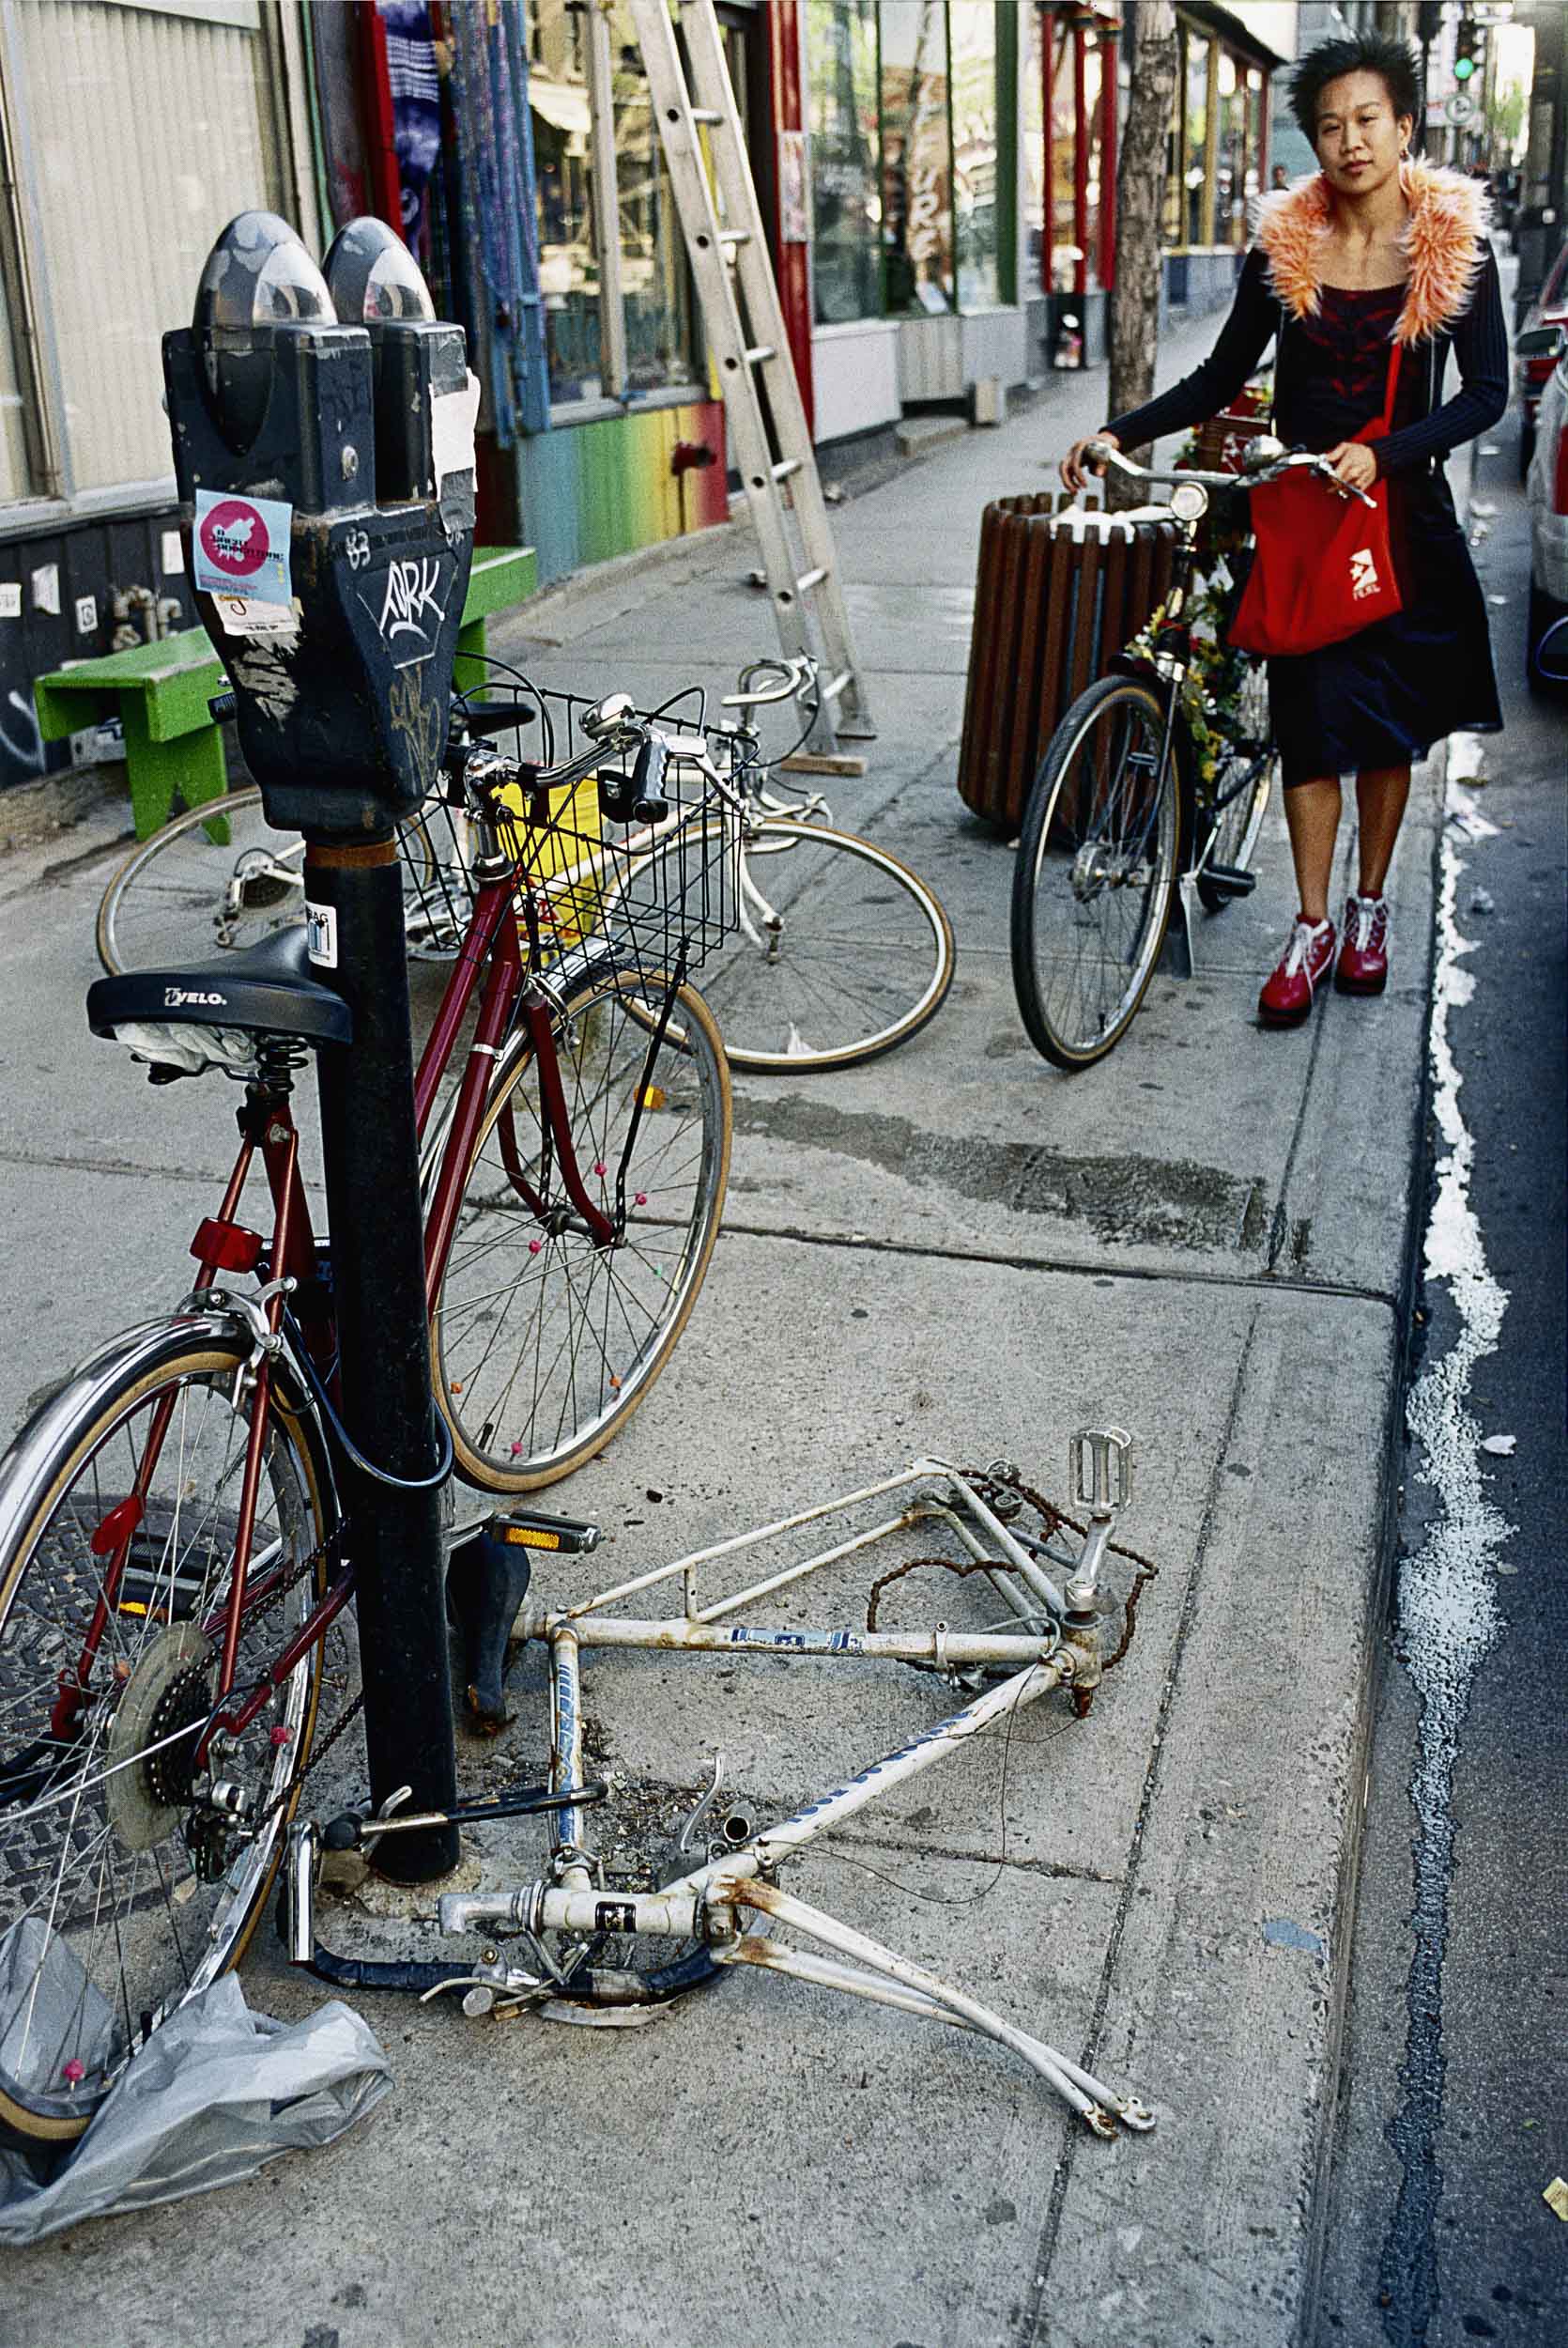  Dure, la vie de vélo à Montréal, souvent cadenassé à un poteau ou un arbre le temps d'un café qui s'allonge ou d'un verre en bonne compagnie, le temps vient changer la vie de cette bécanne en la transformant au fil des saison.
PHOTO / NORMAND BLOUIN